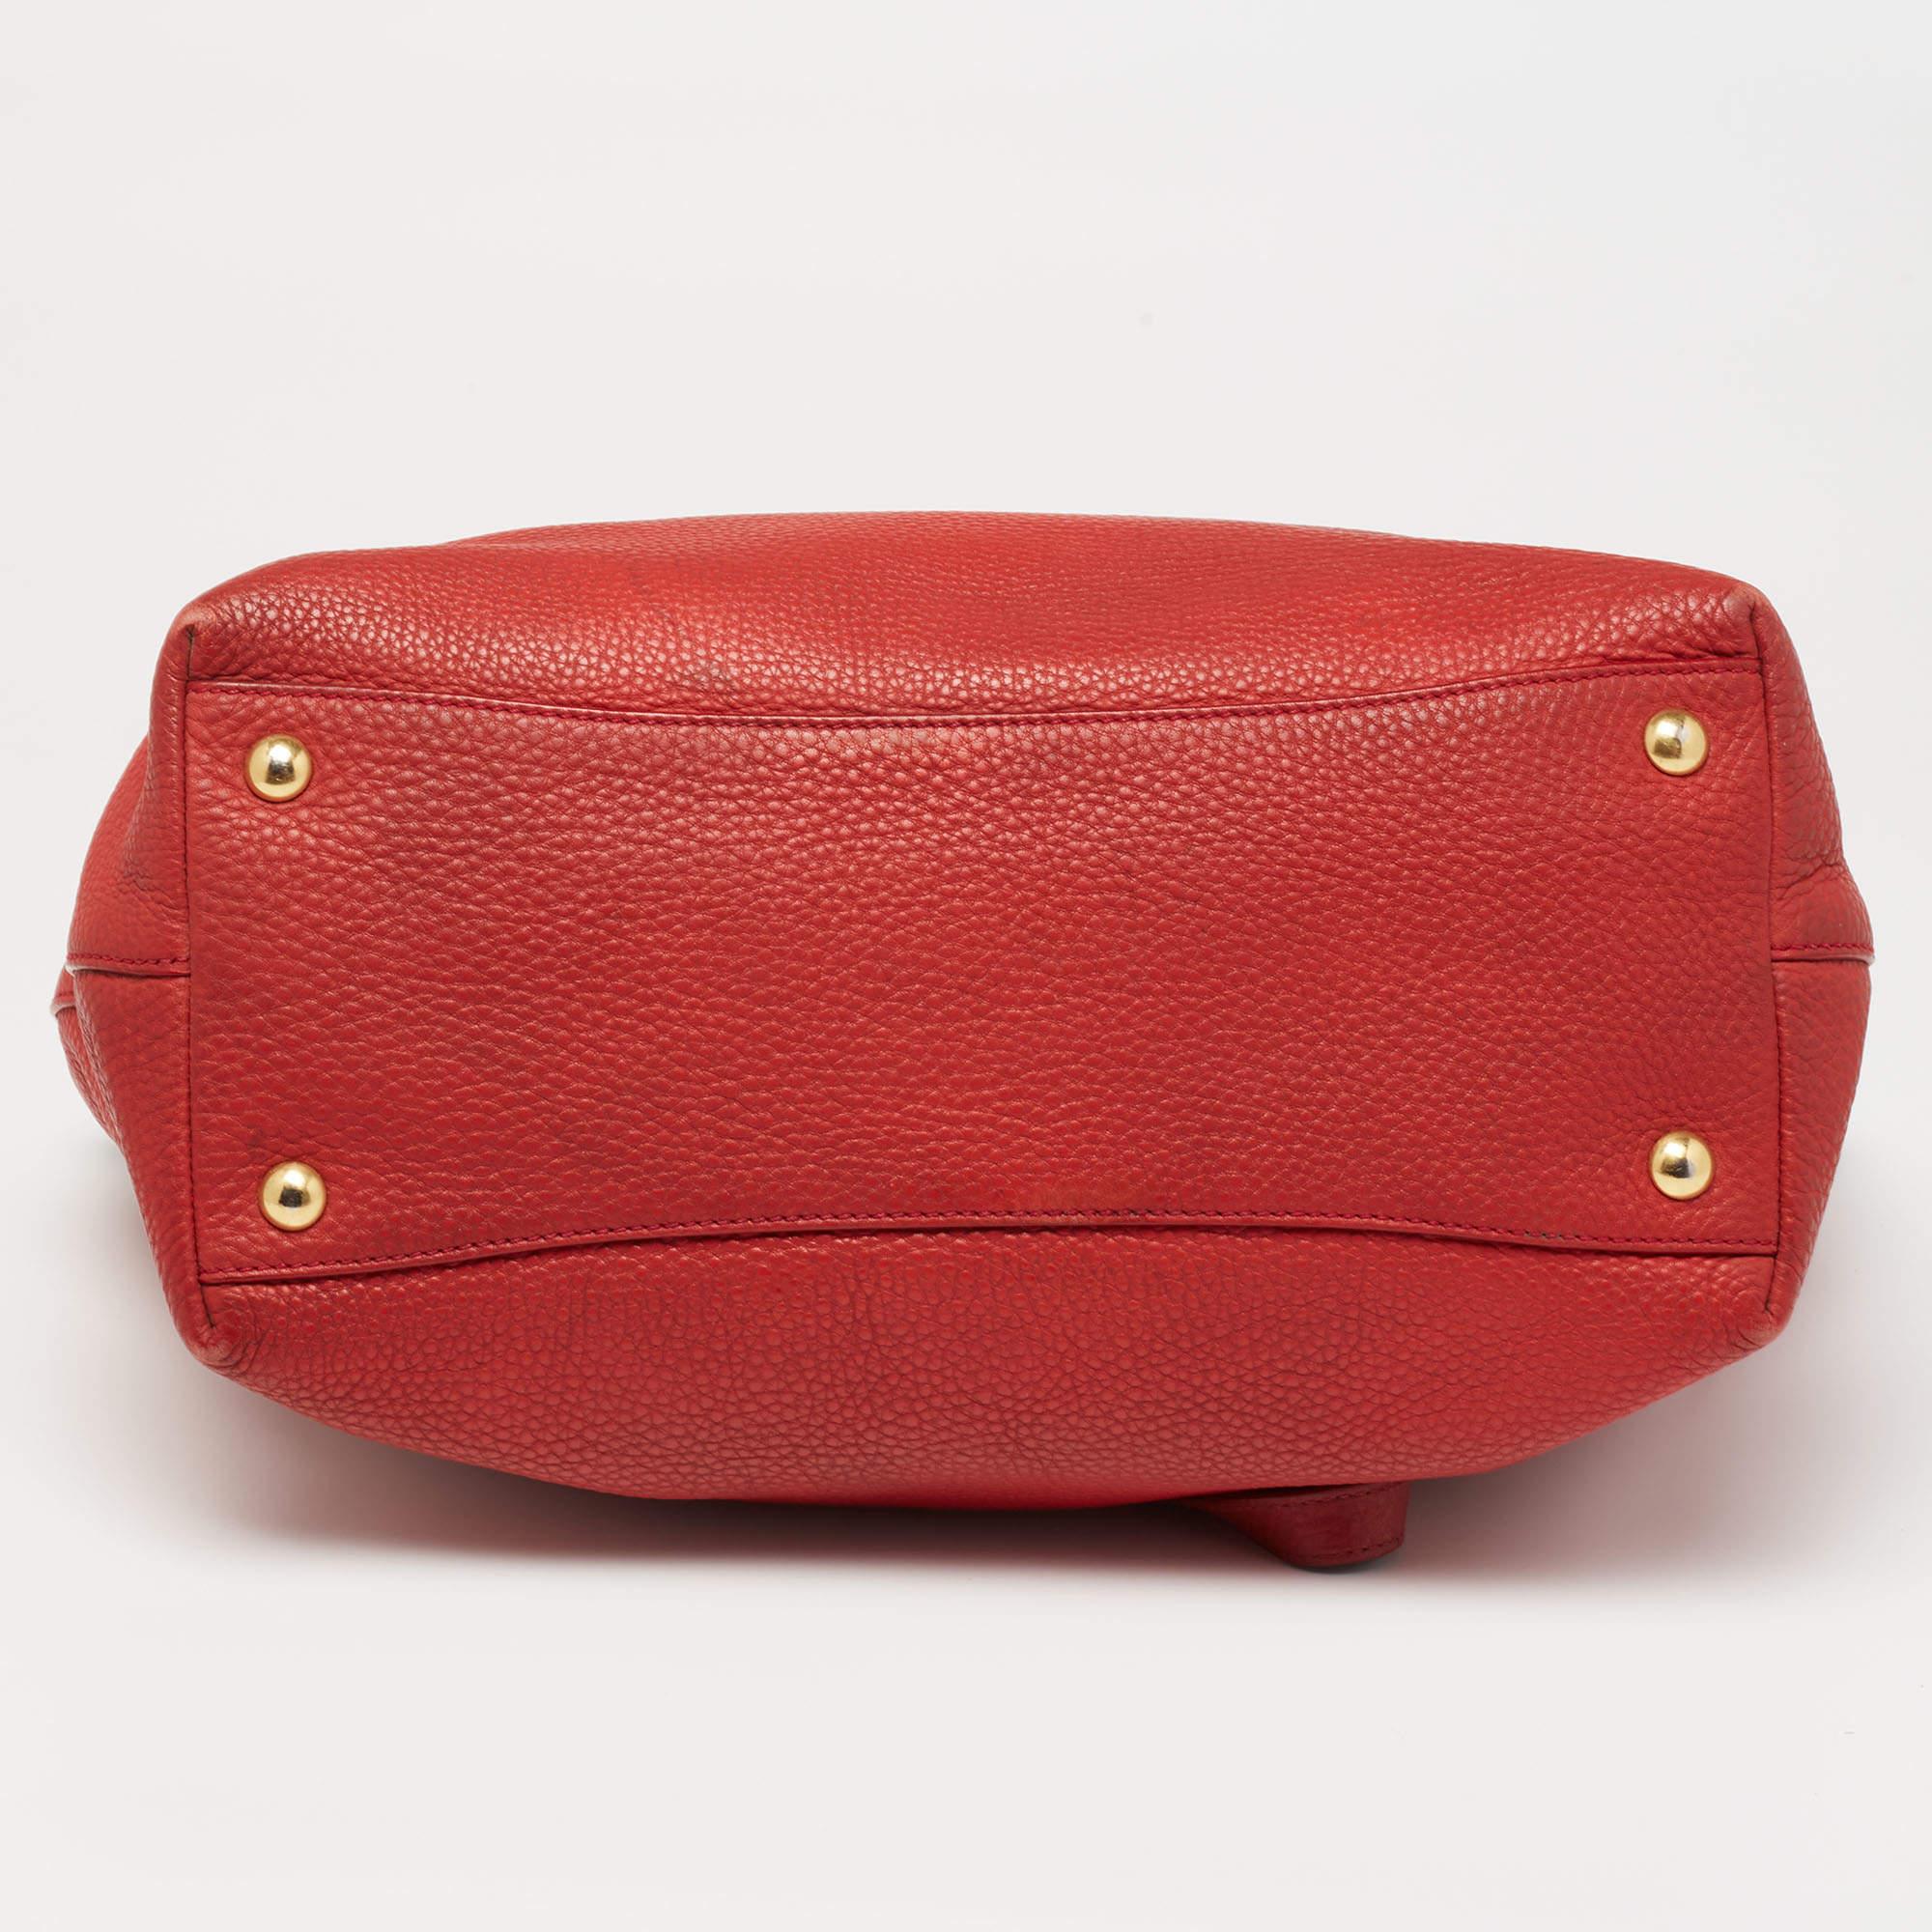 Miu Miu Red Leather Shopper Tote For Sale 1